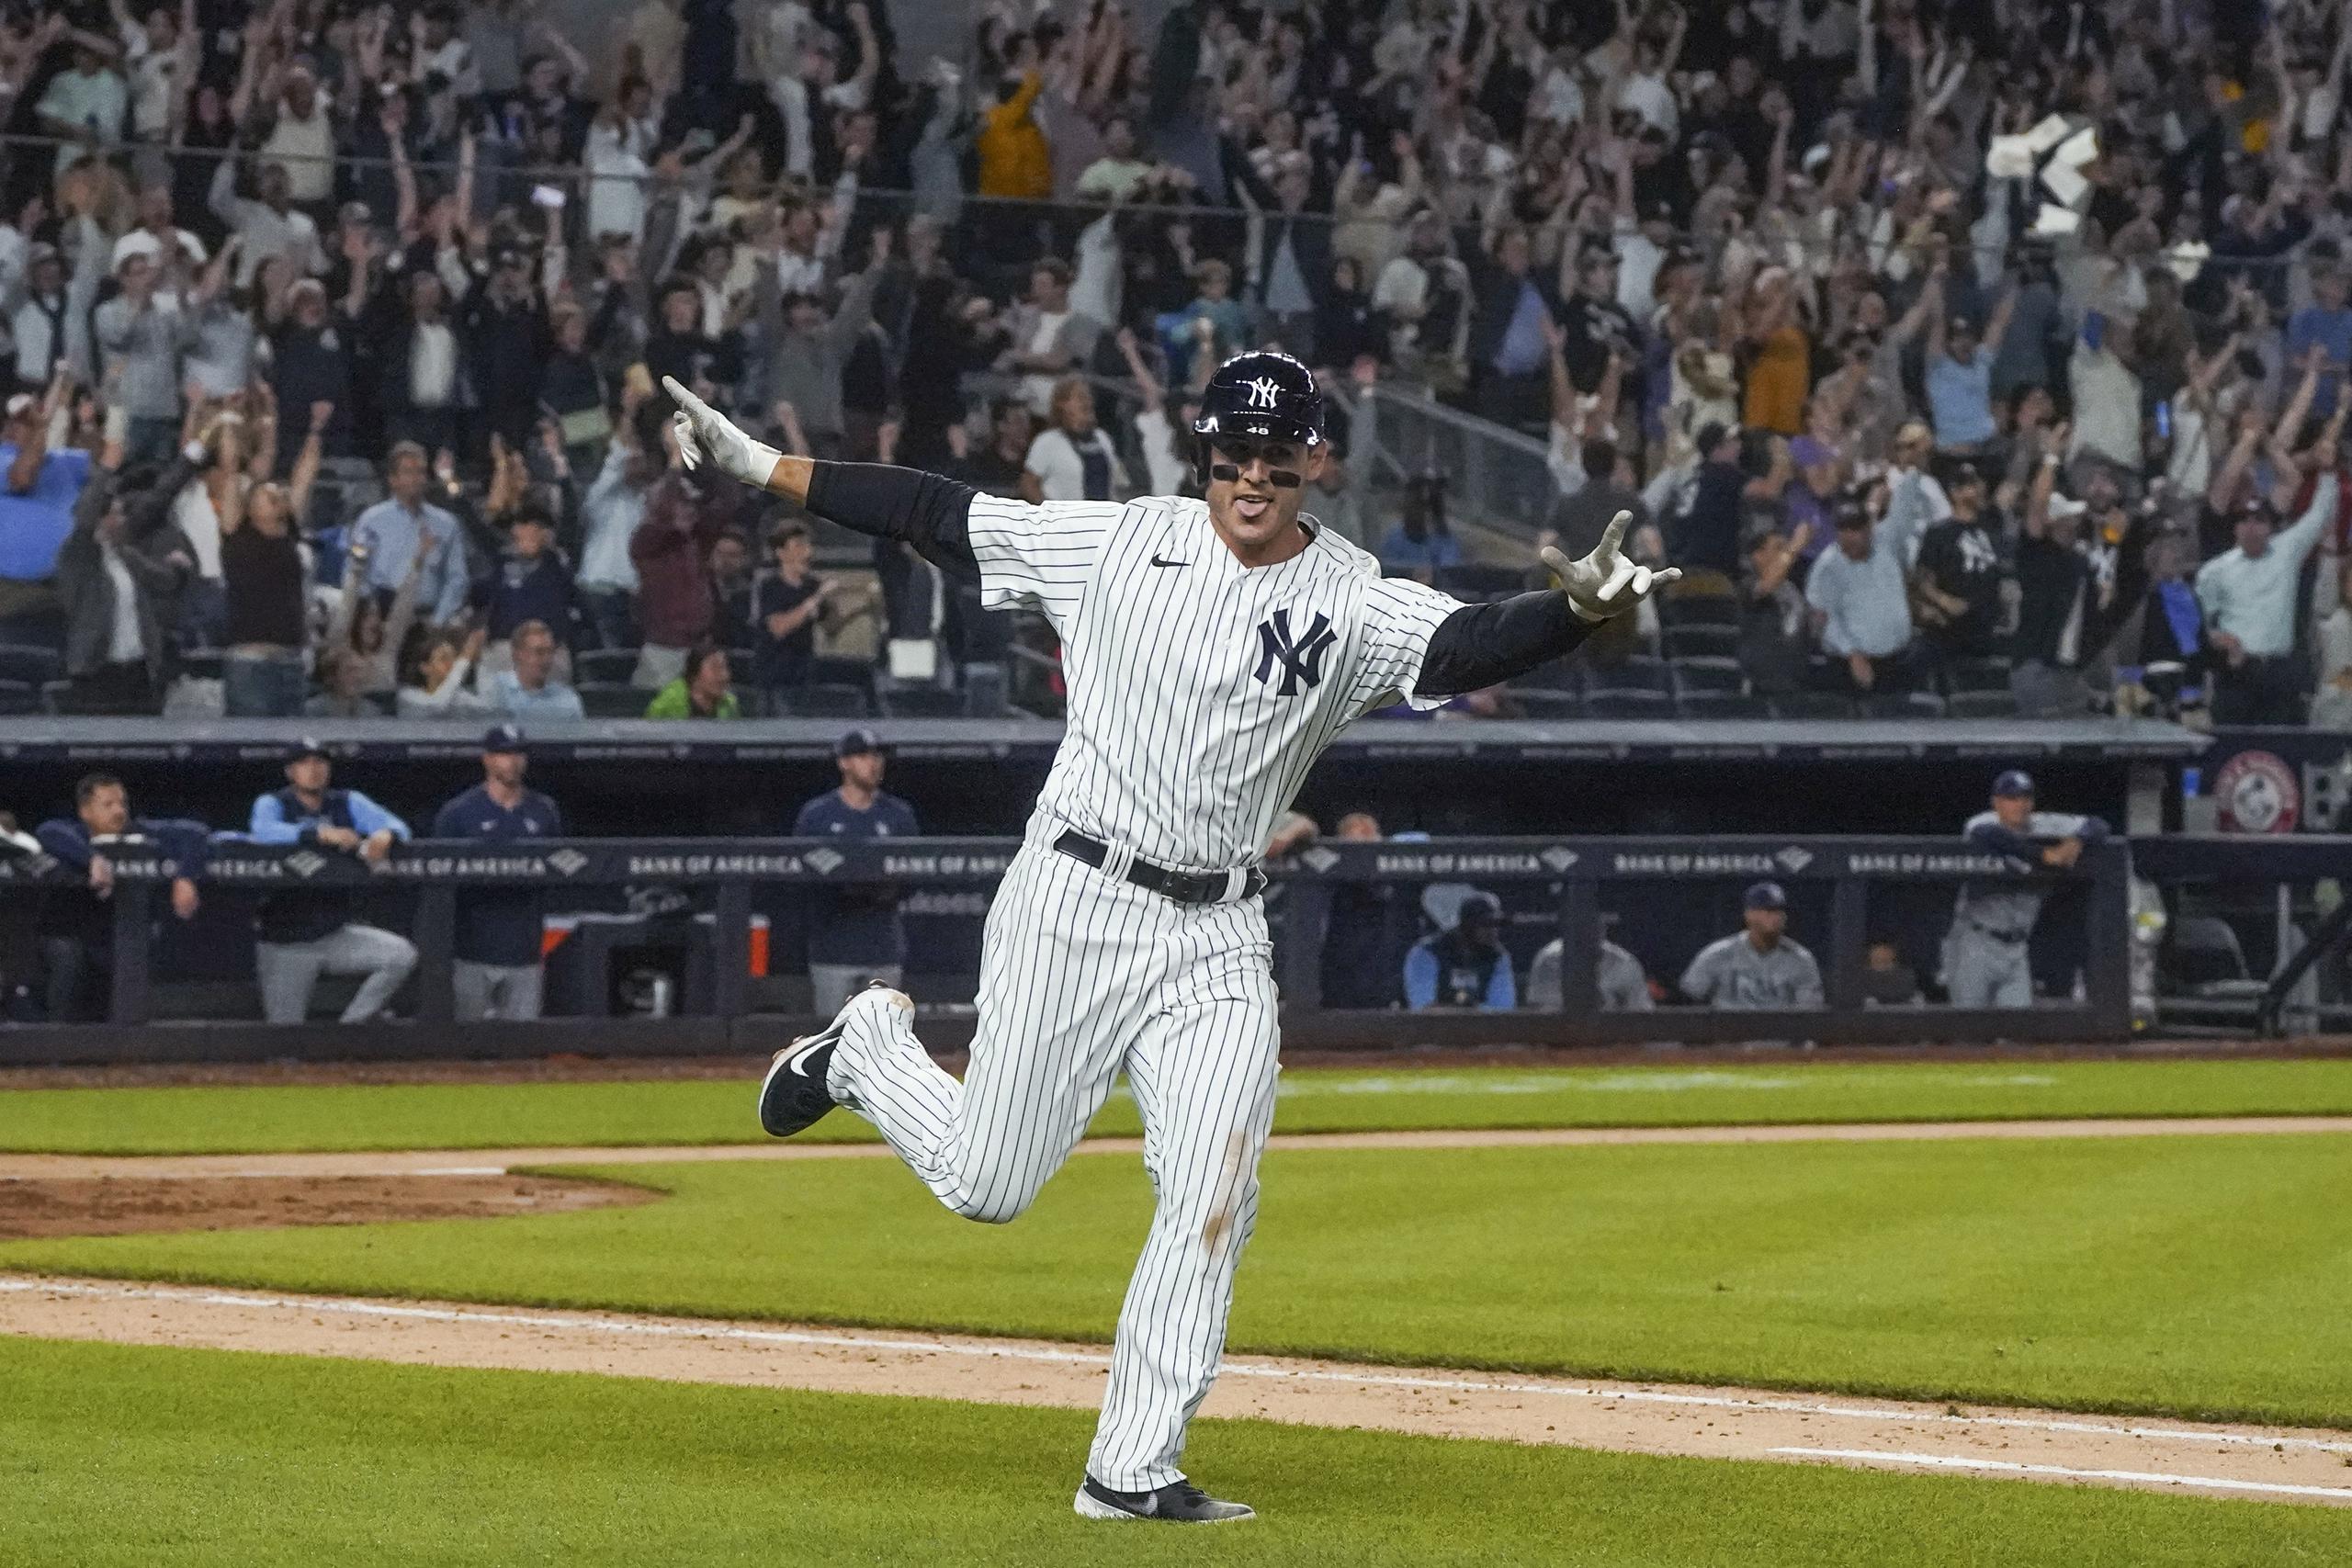 Anthony Rizzo, de los Yankees de Nueva York, inicia la celebración triunfal durante el recorrido de bases. Este disparó un jonrón que dejó sobre el terreno a los Rays de Tampa Bay.